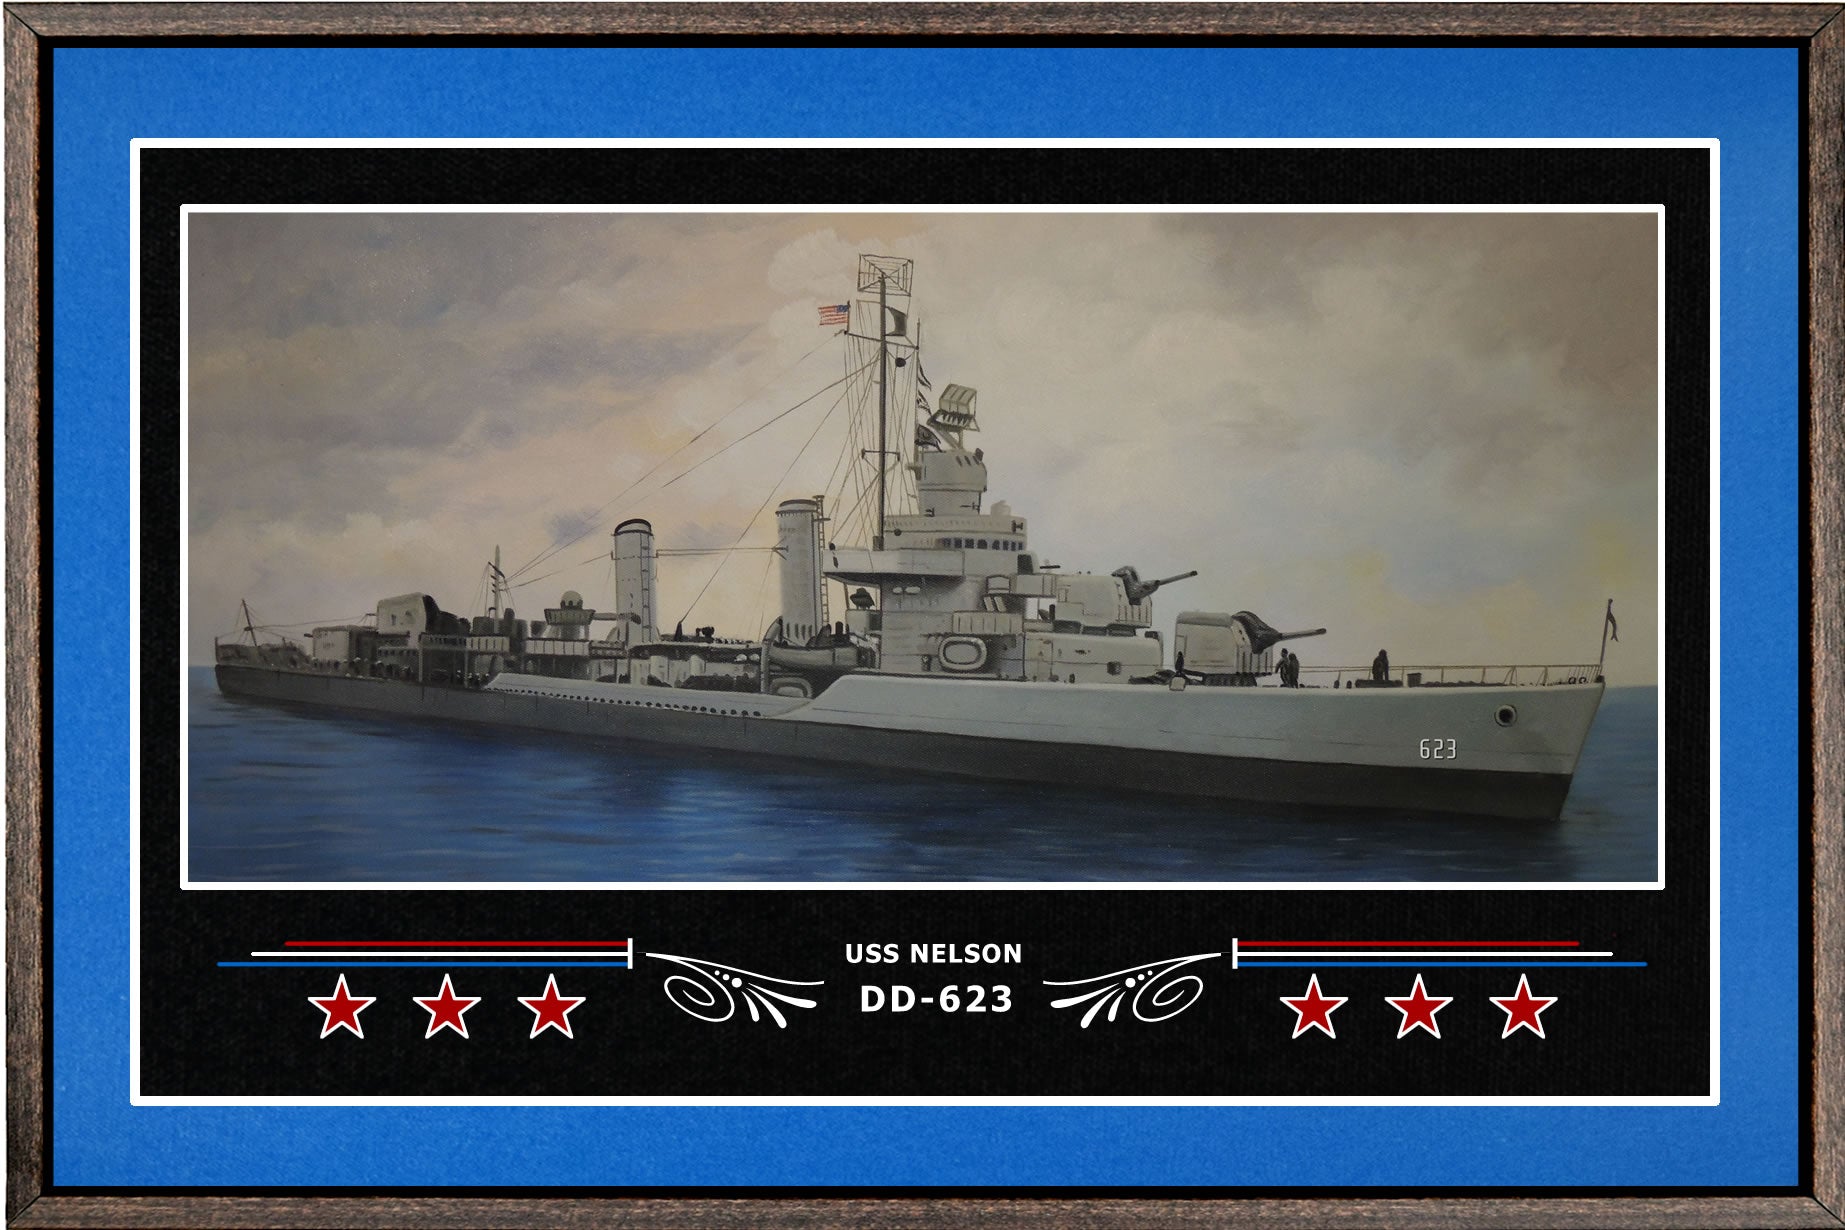 USS NELSON DD 623 BOX FRAMED CANVAS ART BLUE